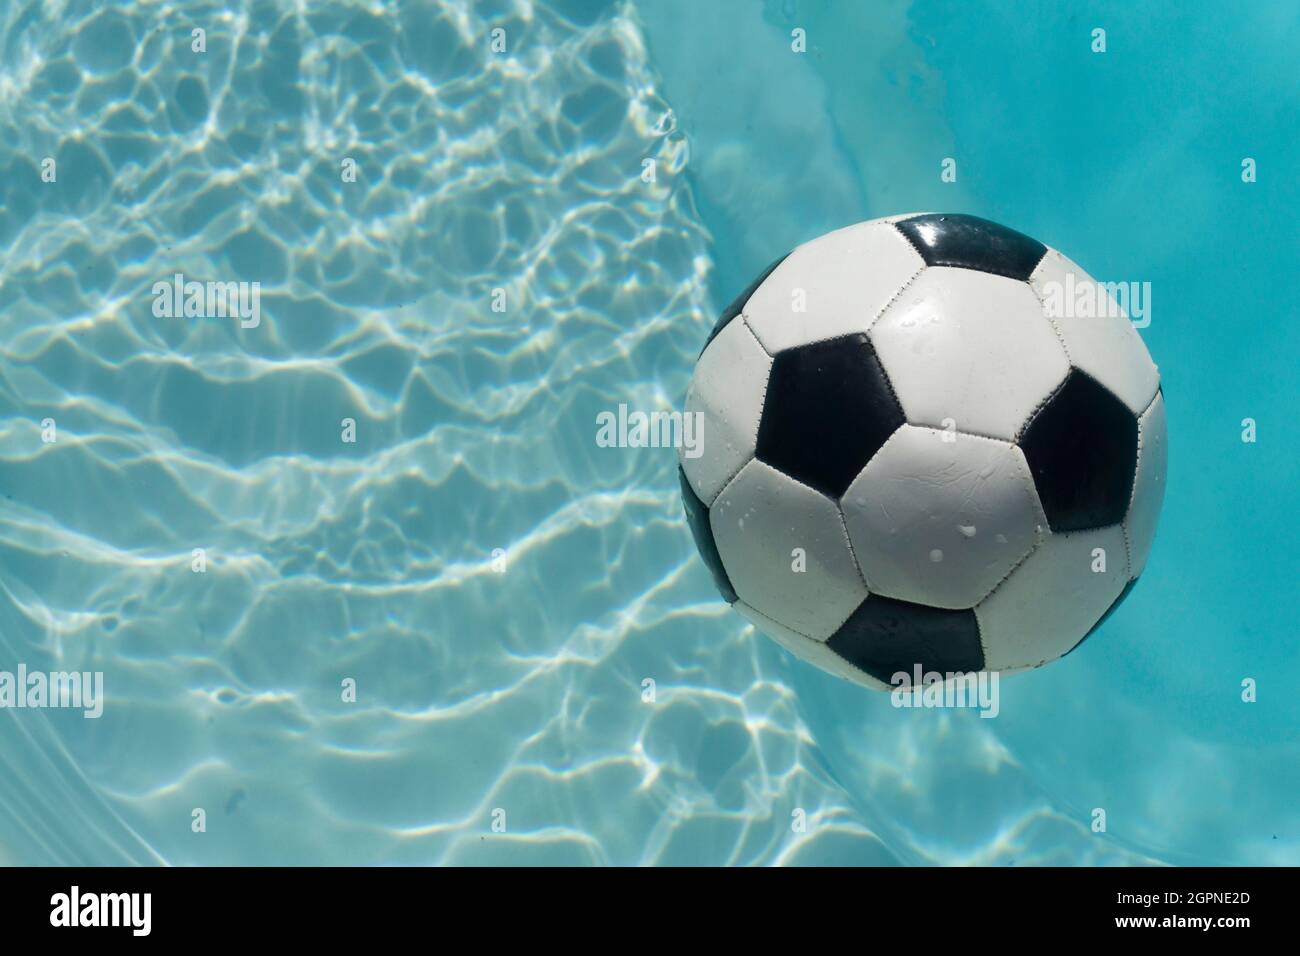 Fútbol blanco y negro flotando en una piscina azul clara. Fondo deportivo de verano Foto de stock